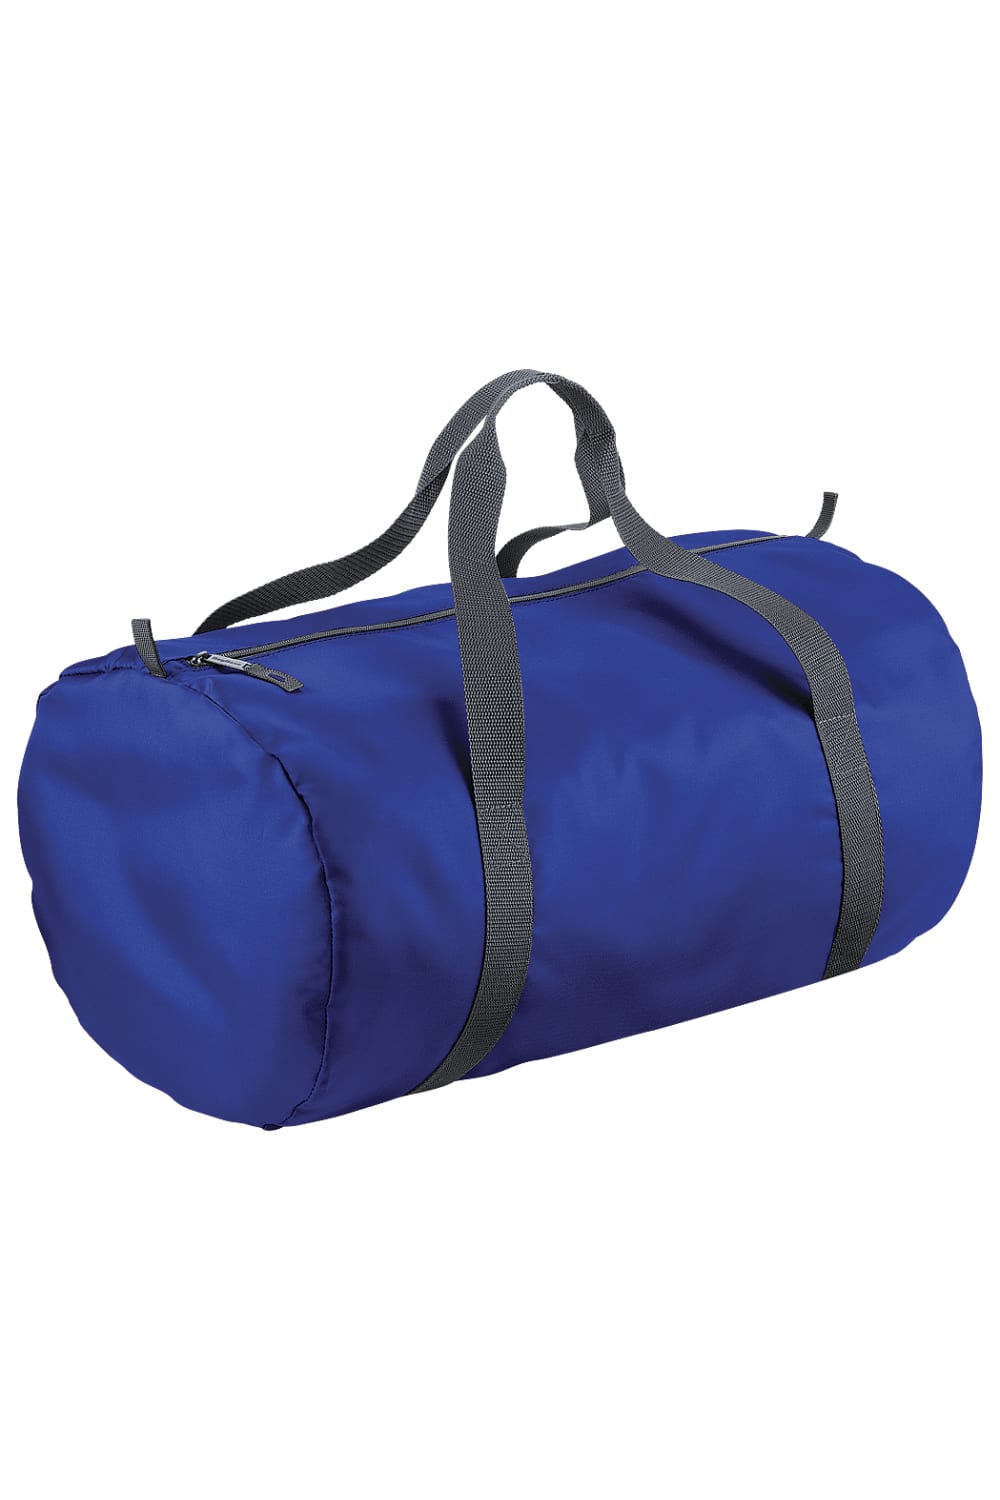 Packaway Barrel Bag/Duffel Water Resistant Travel Bag (8 Gallons) - Bright Royal